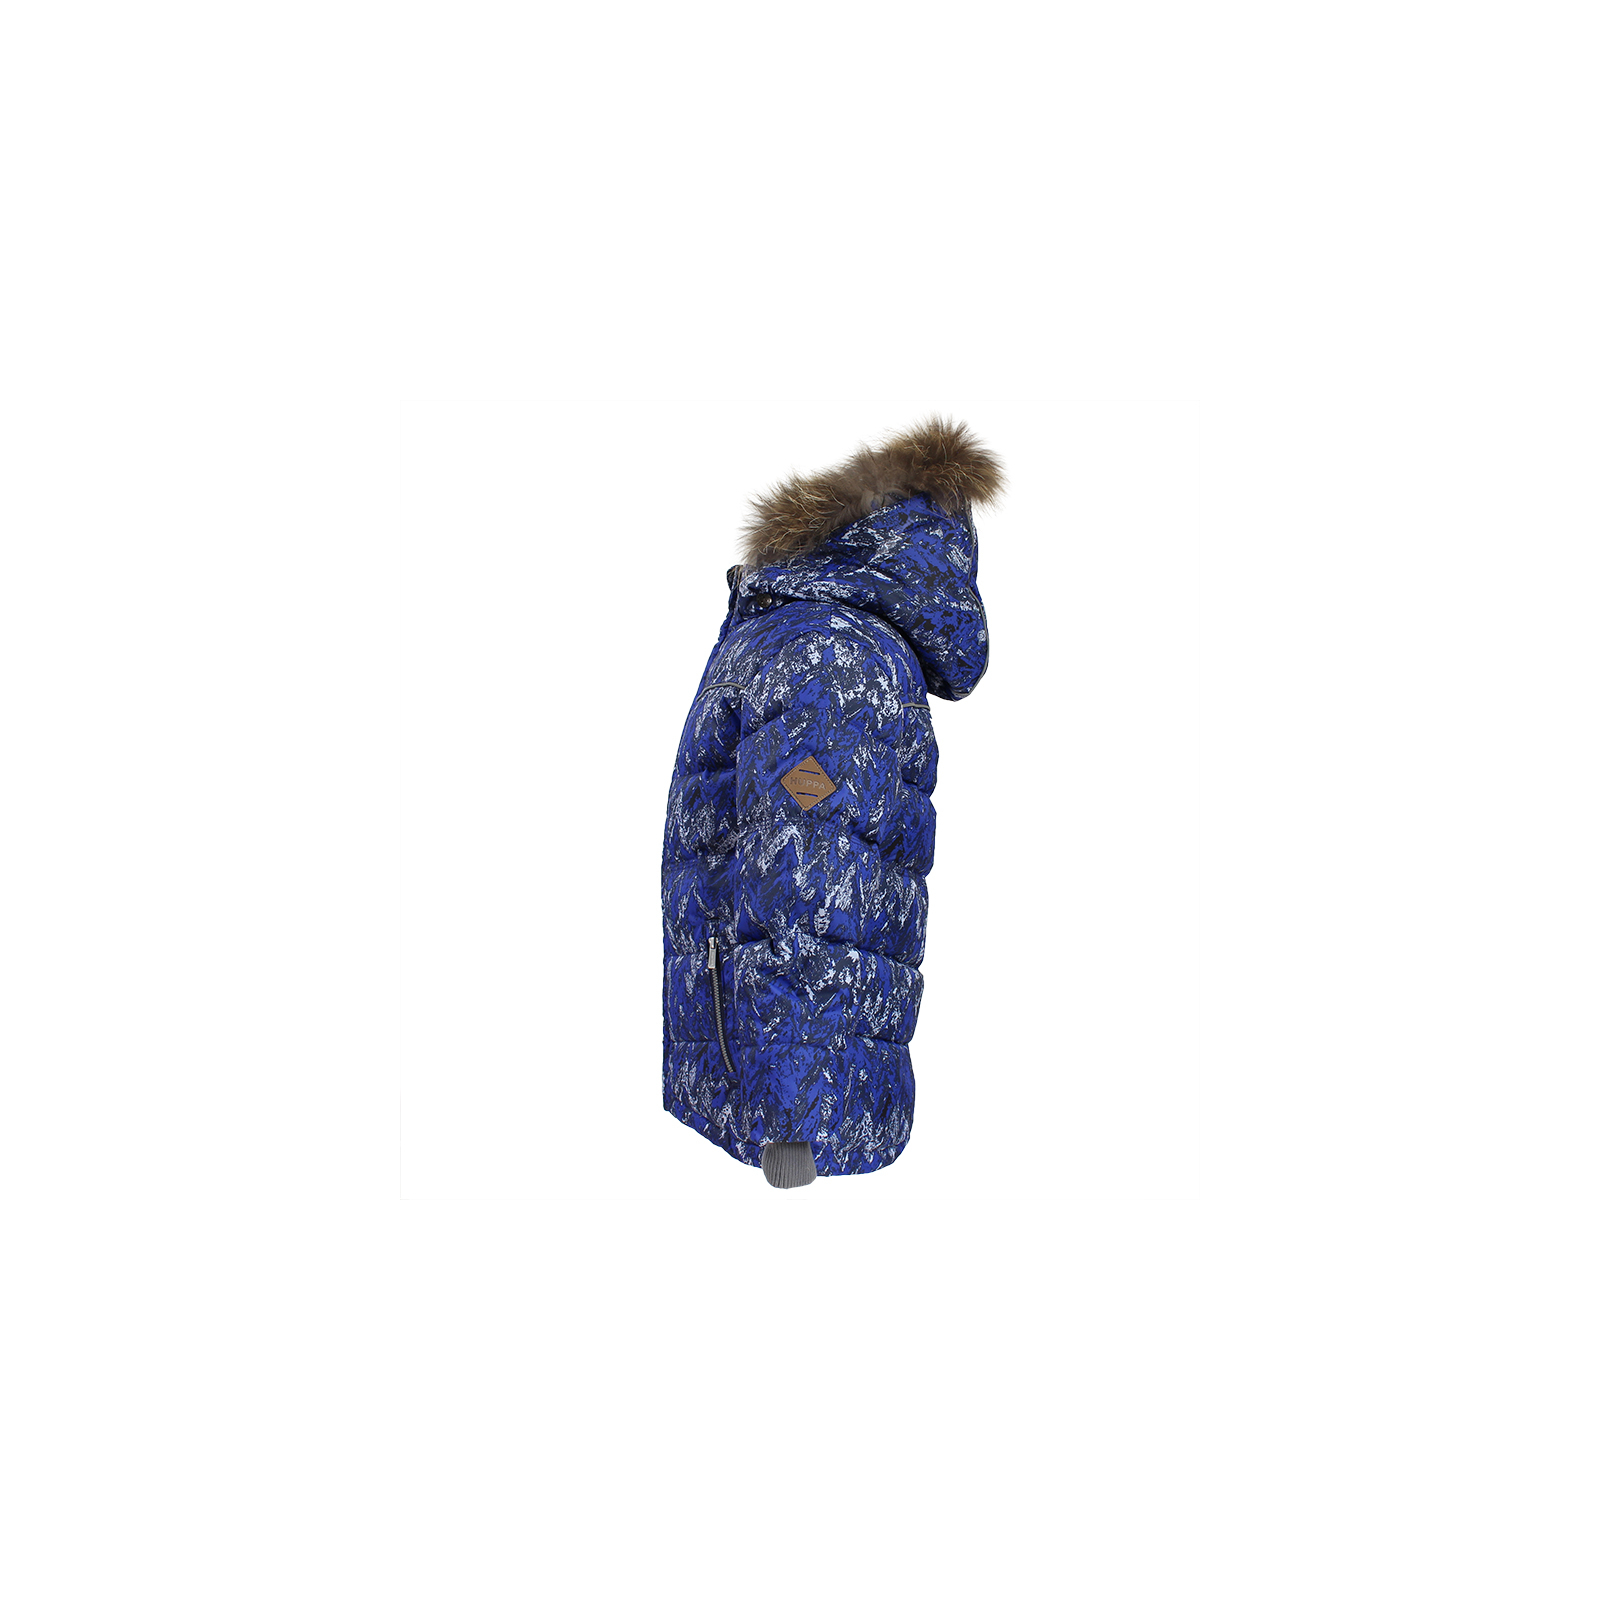 Куртка Huppa MOODY 1 17470155 синій з принтом 128 (4741468568768) зображення 2